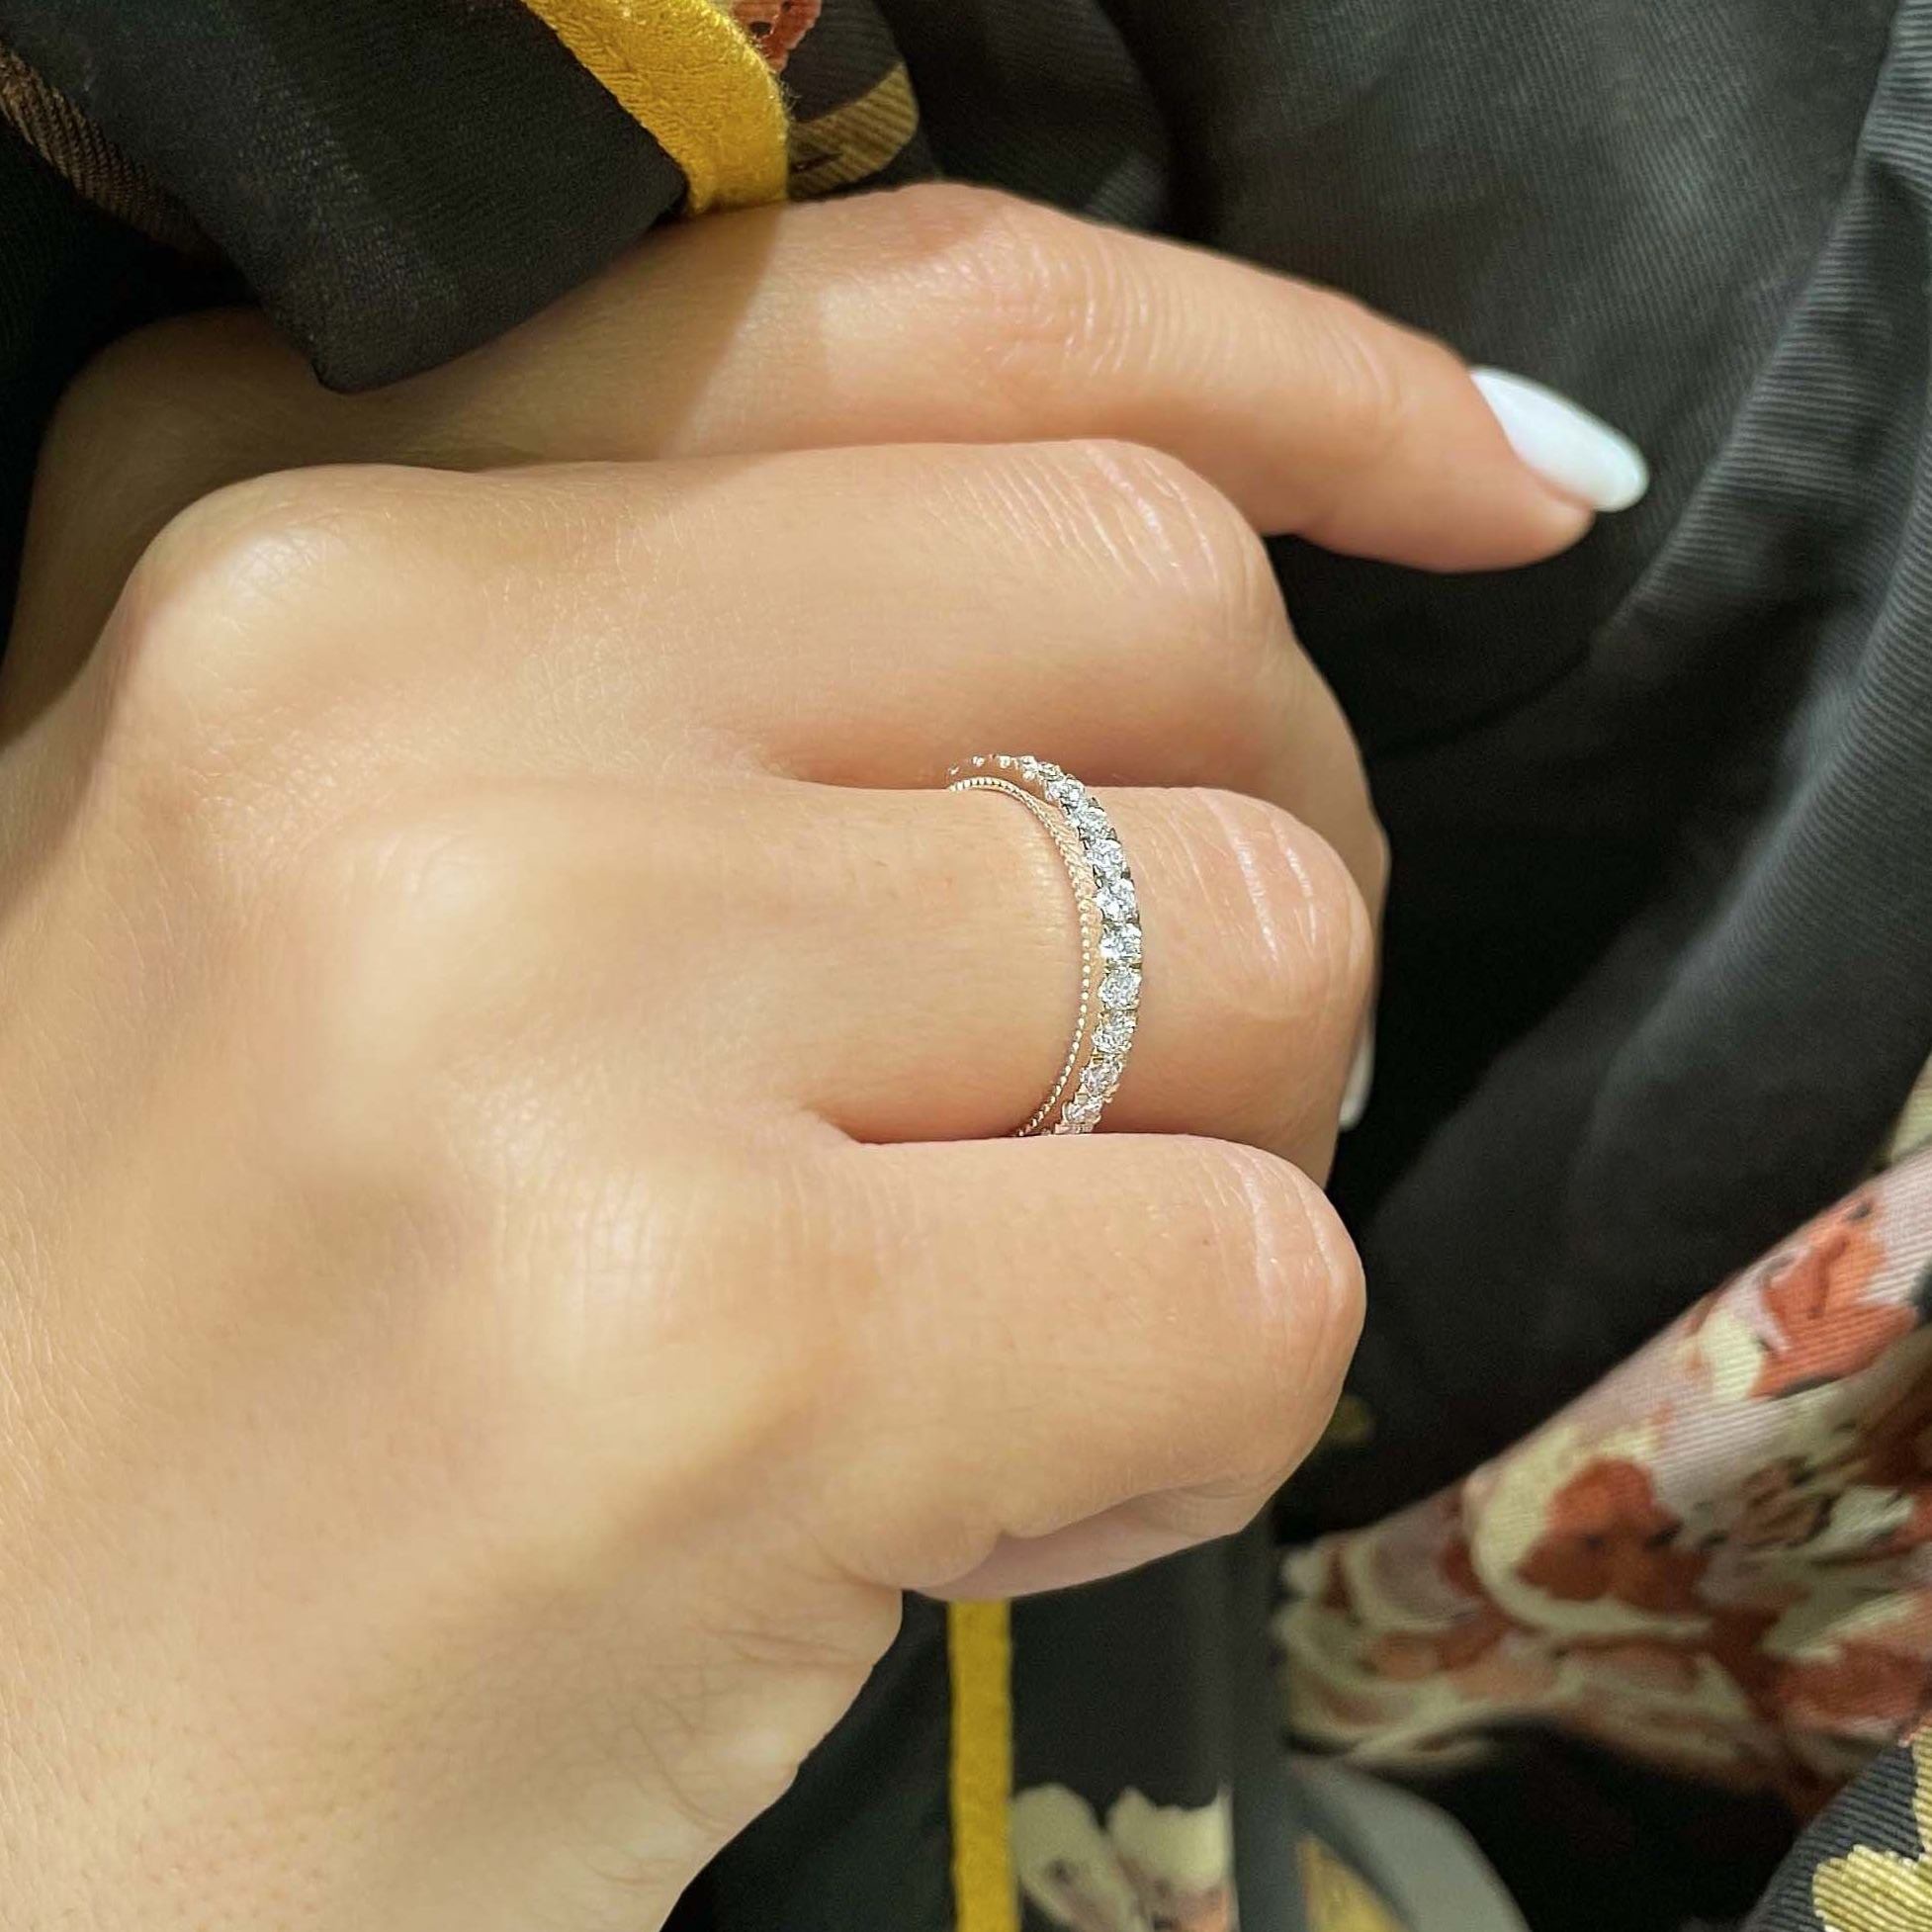 Blair Diamond Wedding Ring   (0.5 Carat) -14K Rose Gold